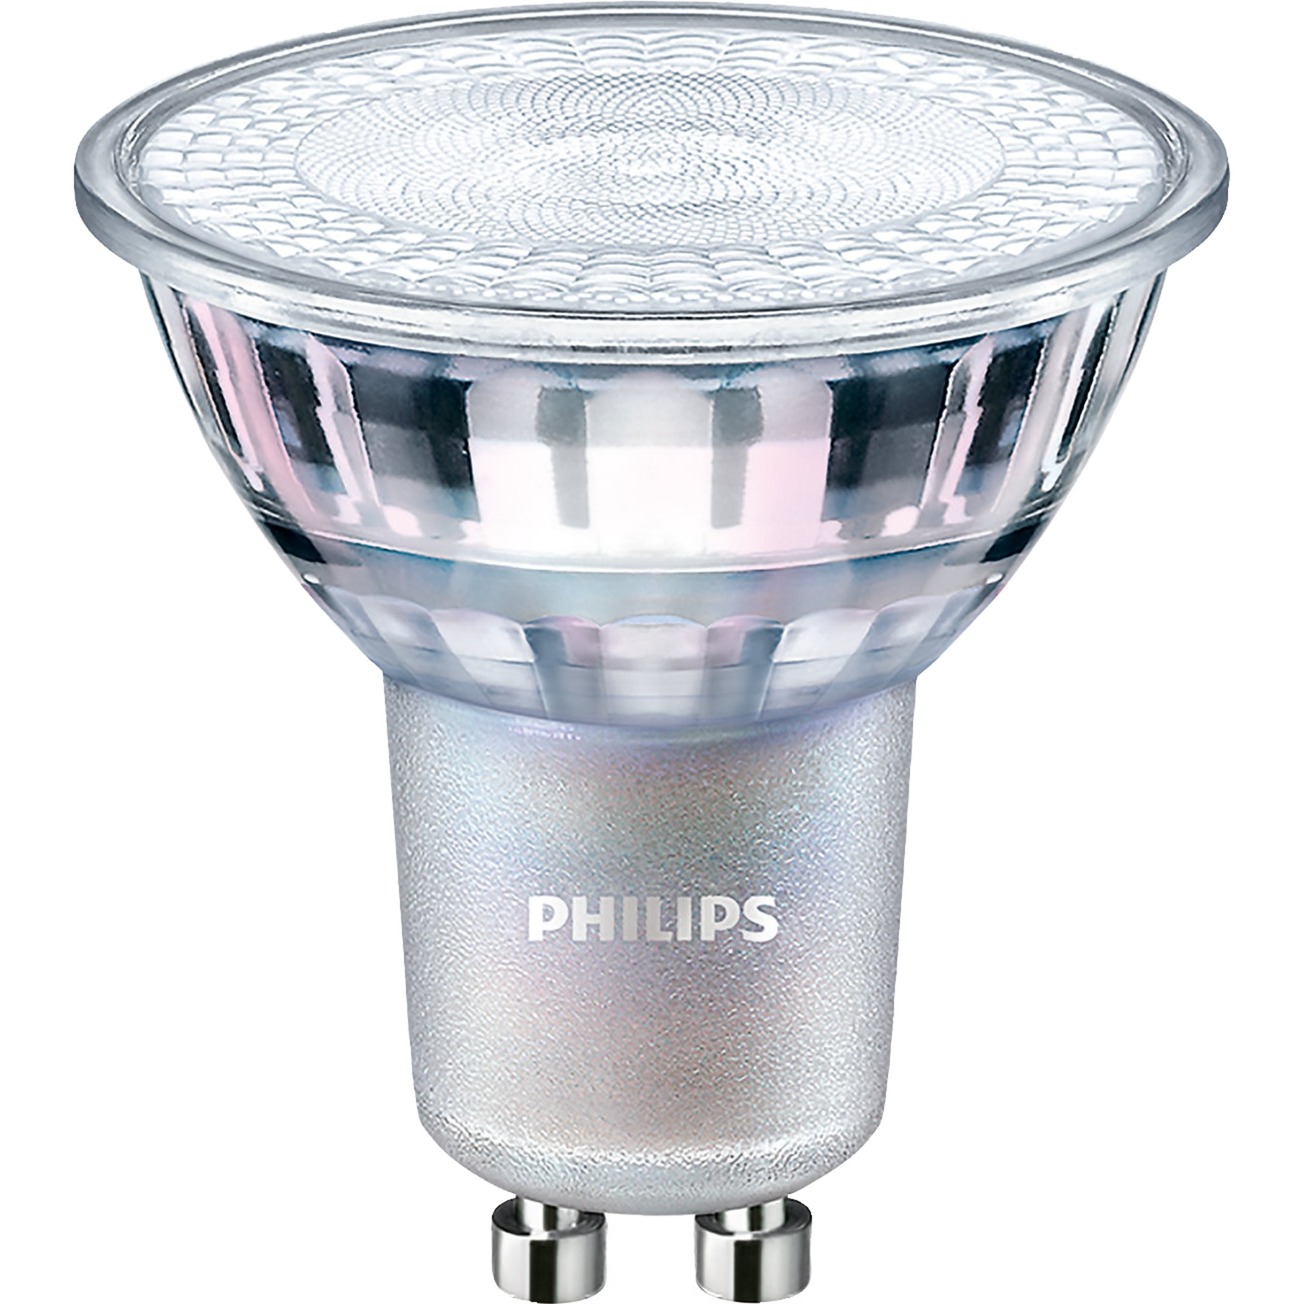 MASTER LEDspot Value D 4.9-50W GU10 927 60D, LED-Lampe von Philips